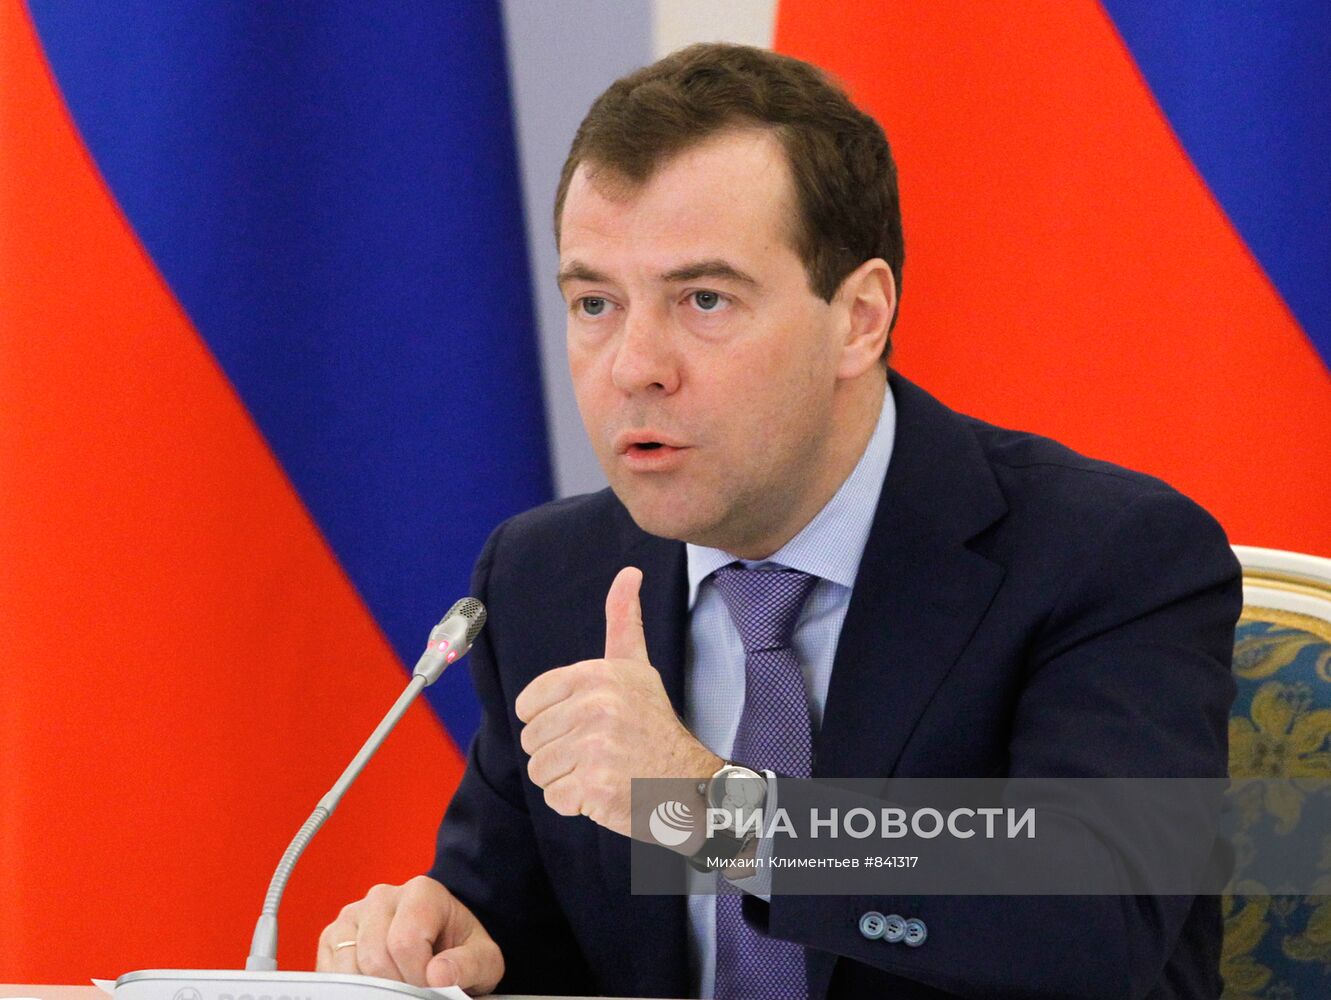 Дмитрий Медведев встретился с руководством Федерального собрания